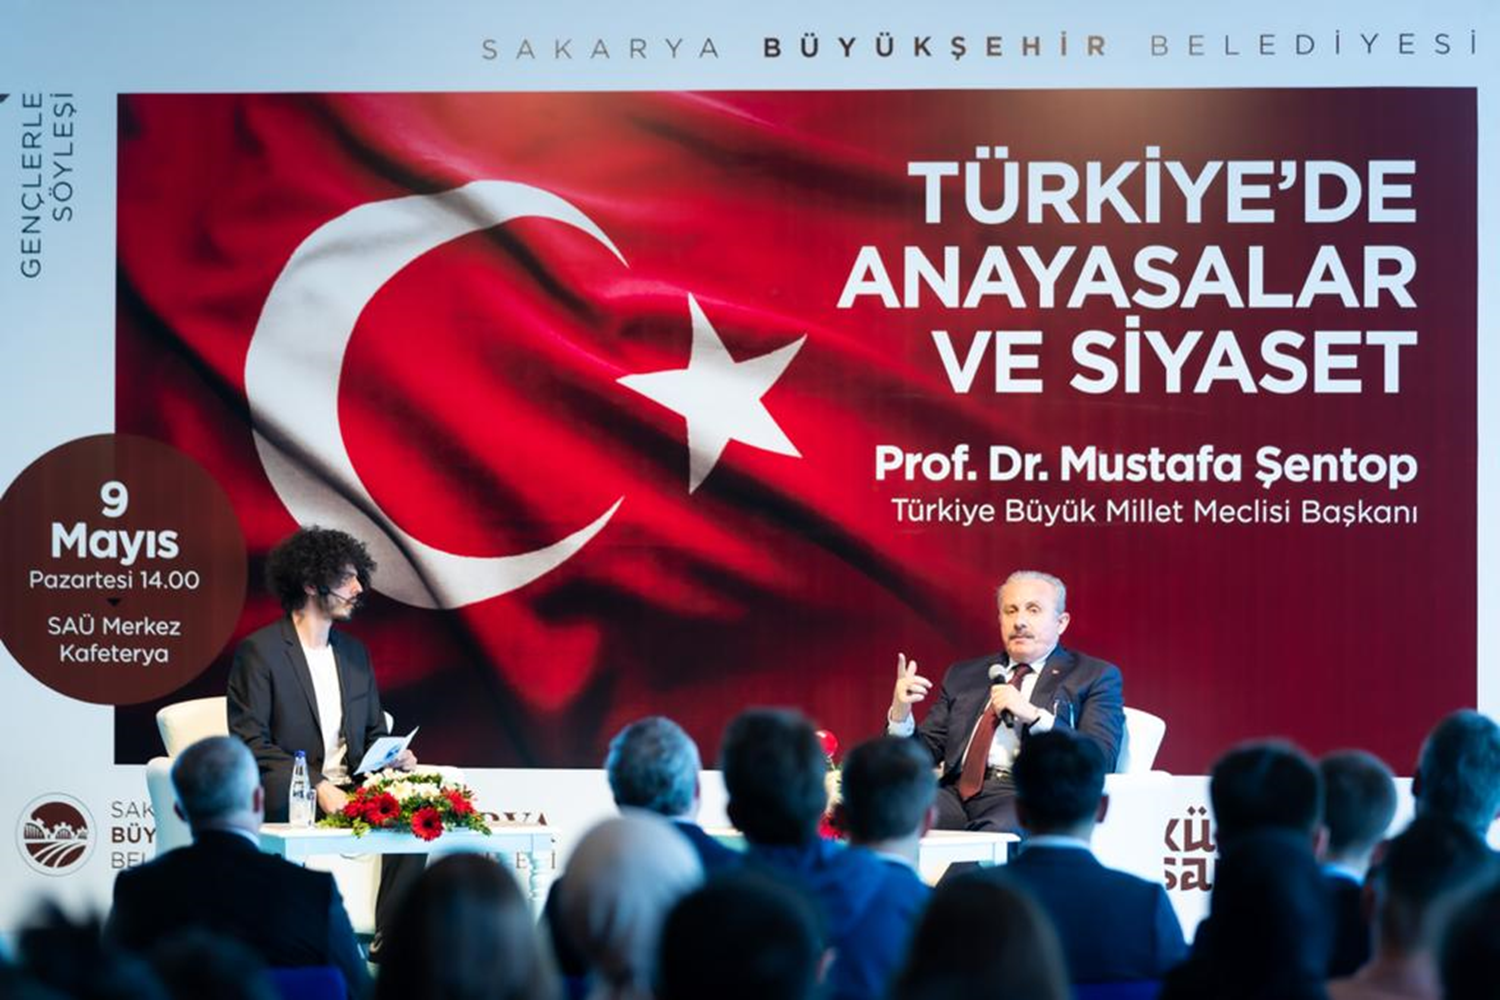 TBMM Bakan entop: Trkiye'ye yeni bir anayasa gereklidir